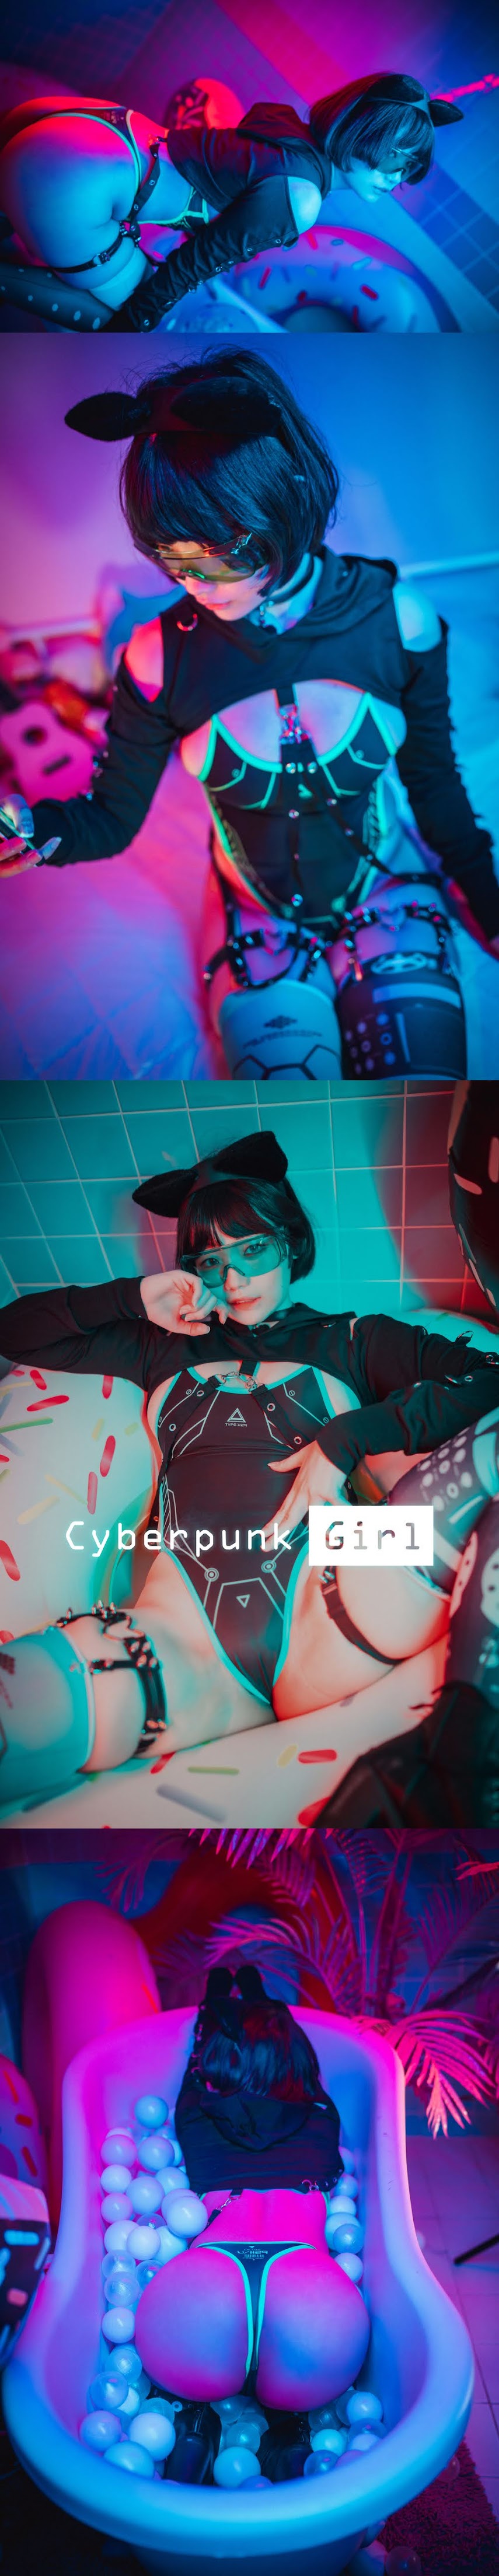 P215015.rar-jk- [DJAWA] Cyberpunk Girl - Mimmi   P215015